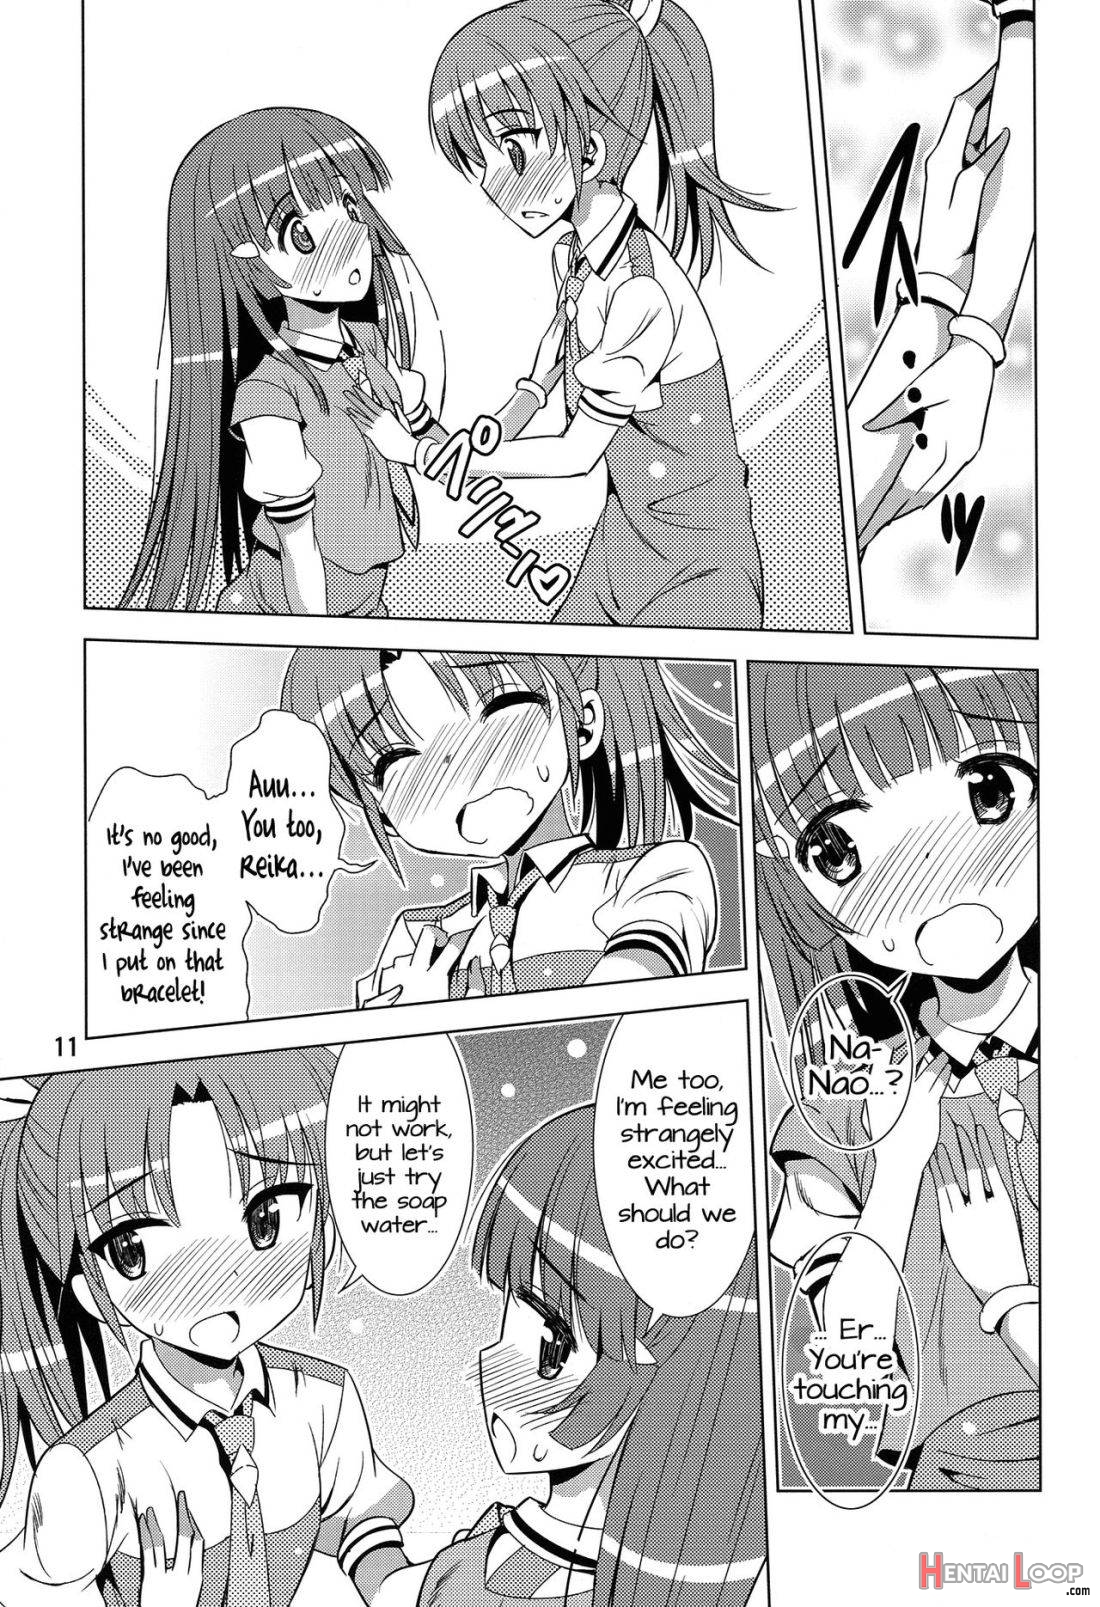 ReiNao ga Muramura suru!? page 9